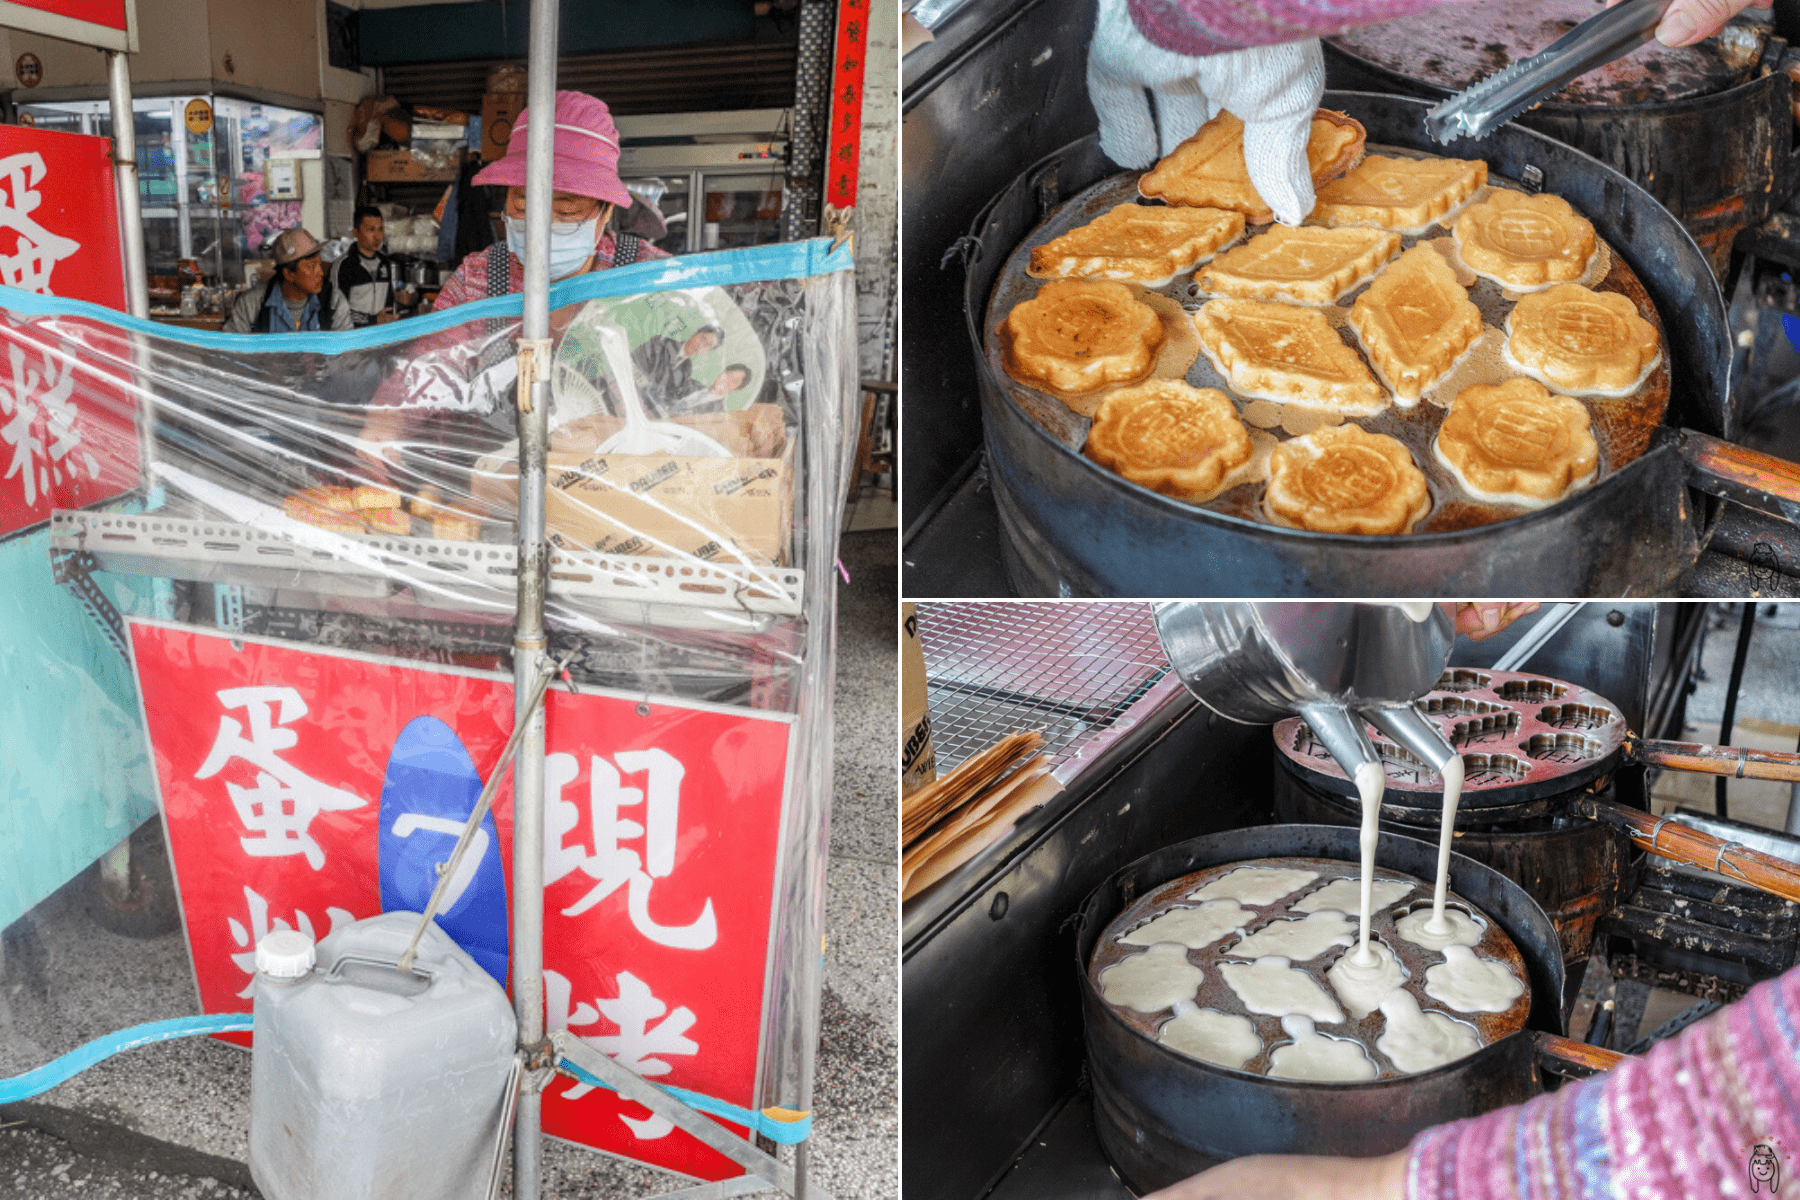 台南學甲必吃美食 學甲古早味雞蛋糕，均一價七元，時常賣不到三小時就售完，超高人氣下午茶點心。